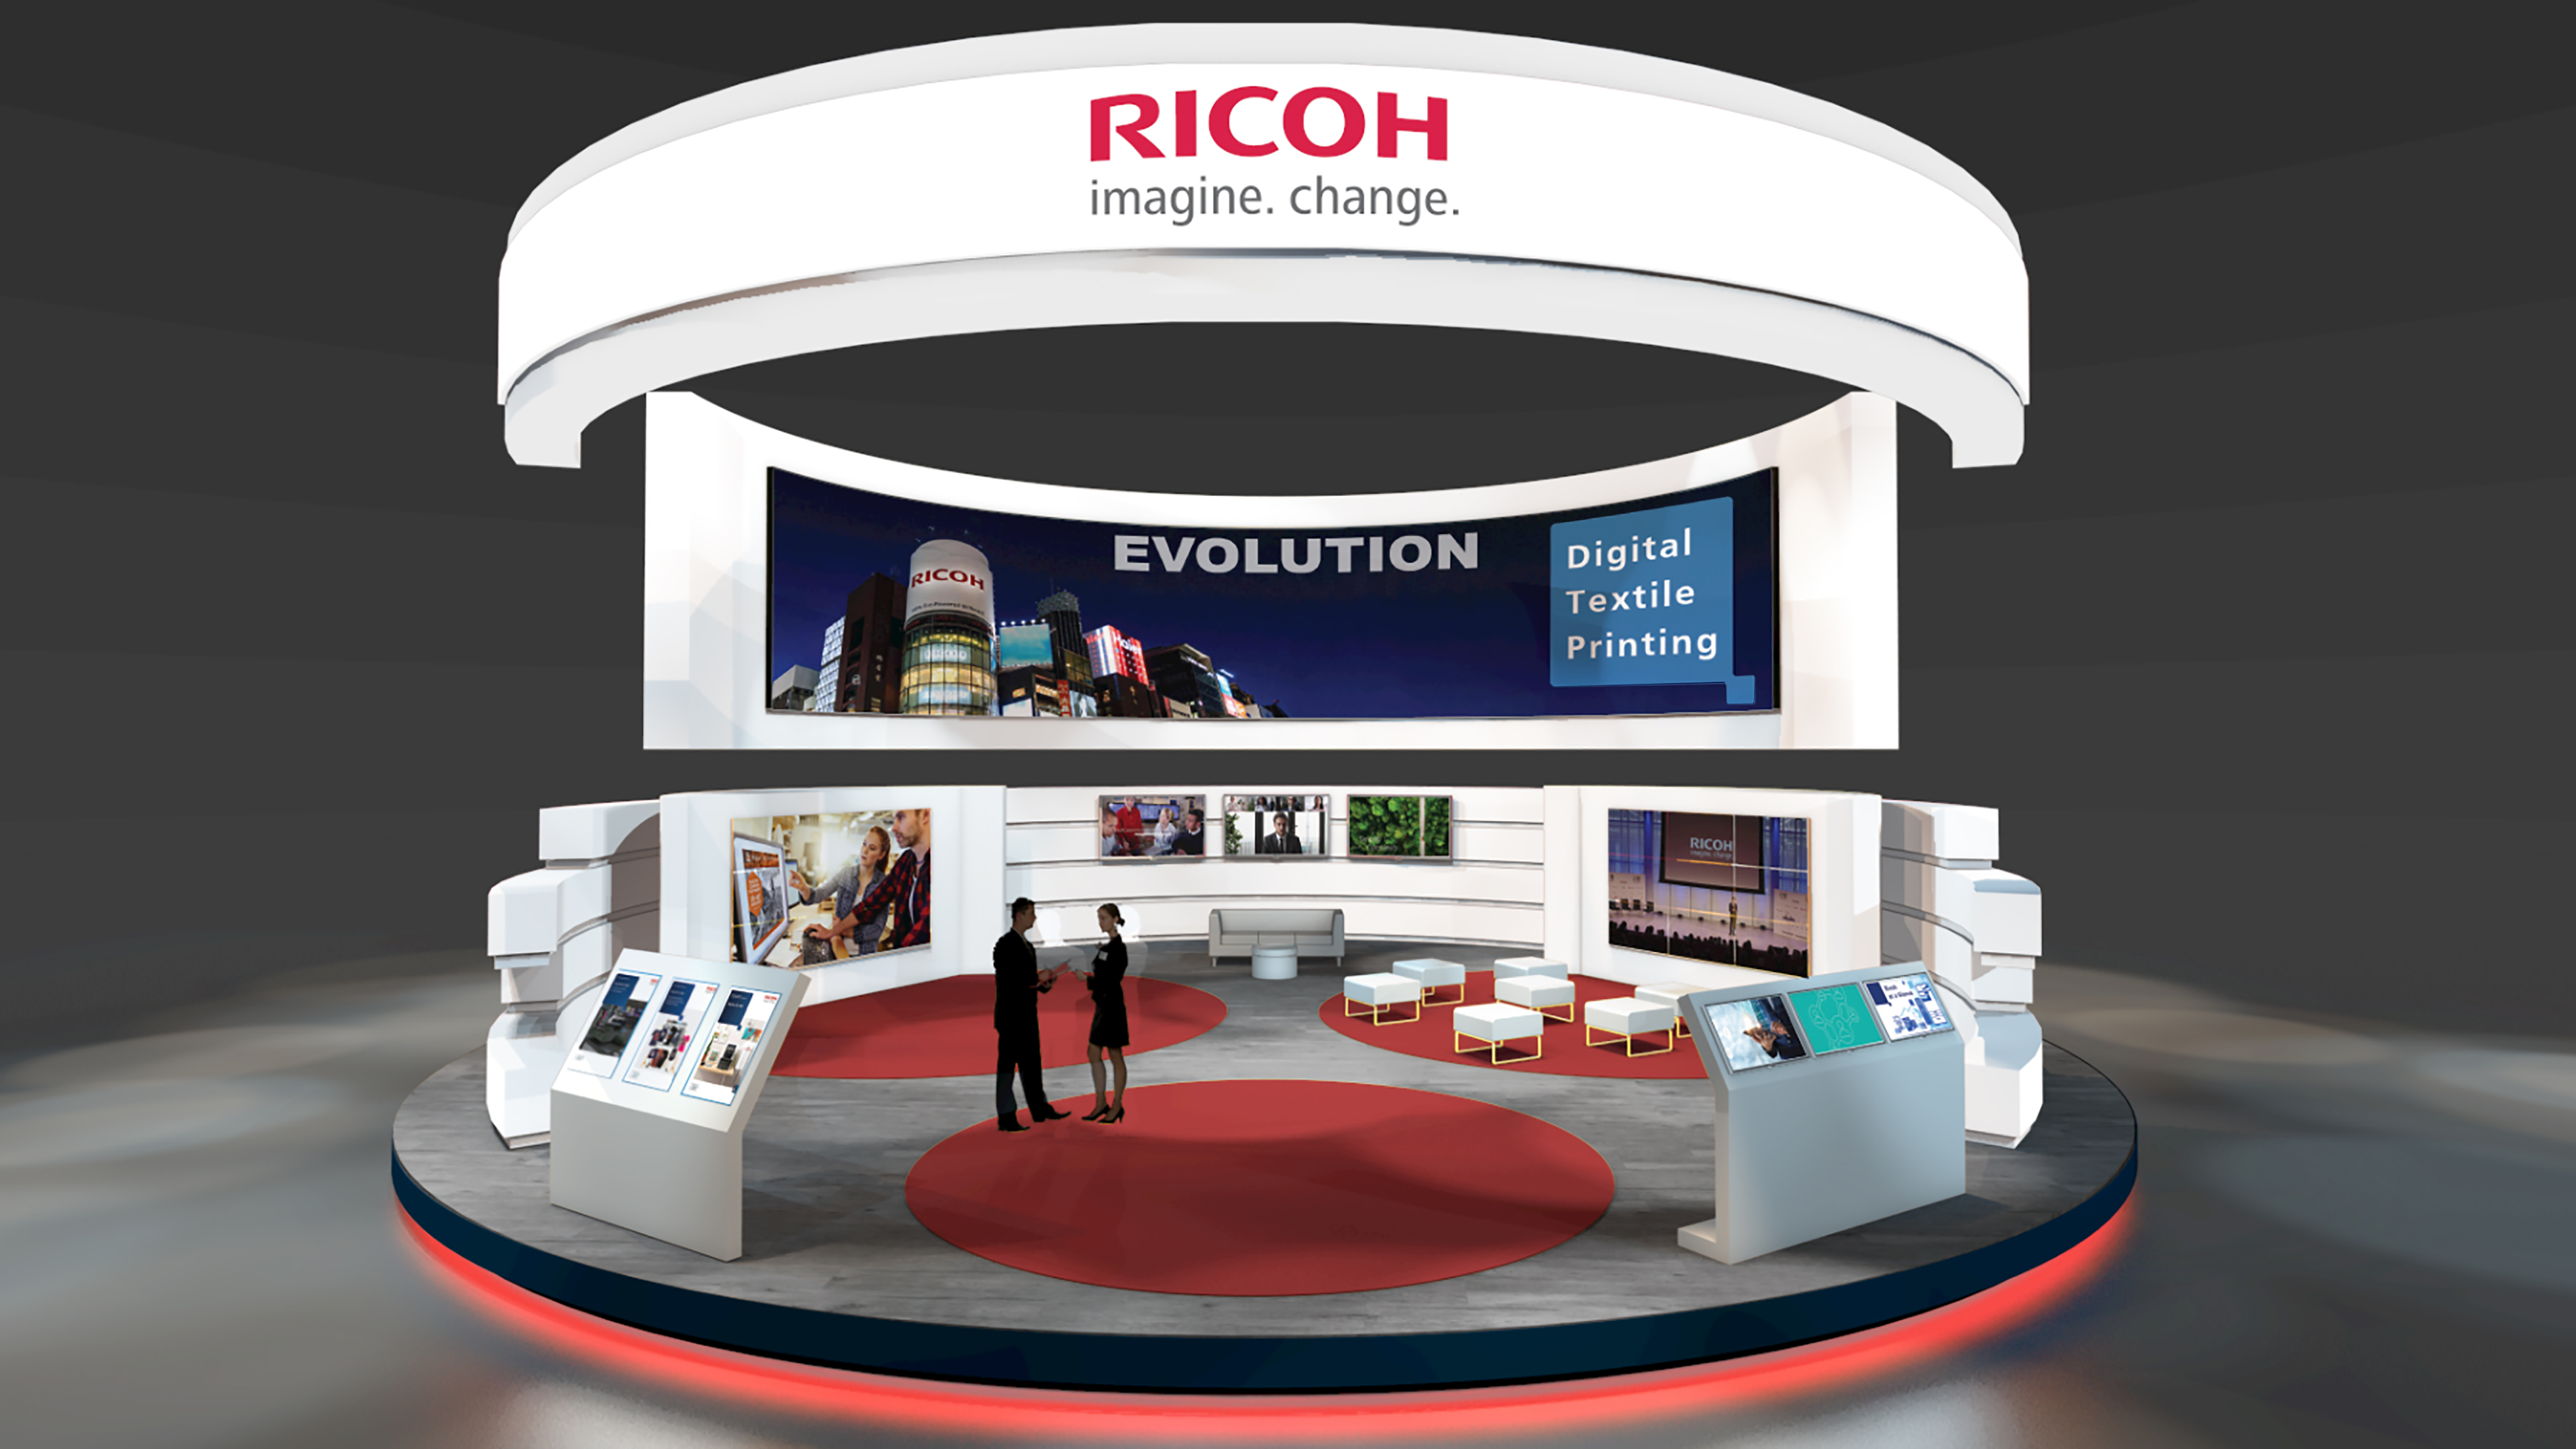 Ricoh, sponsor de Innovate 2021, illustrera l'évolution de l'impression textile numérique.